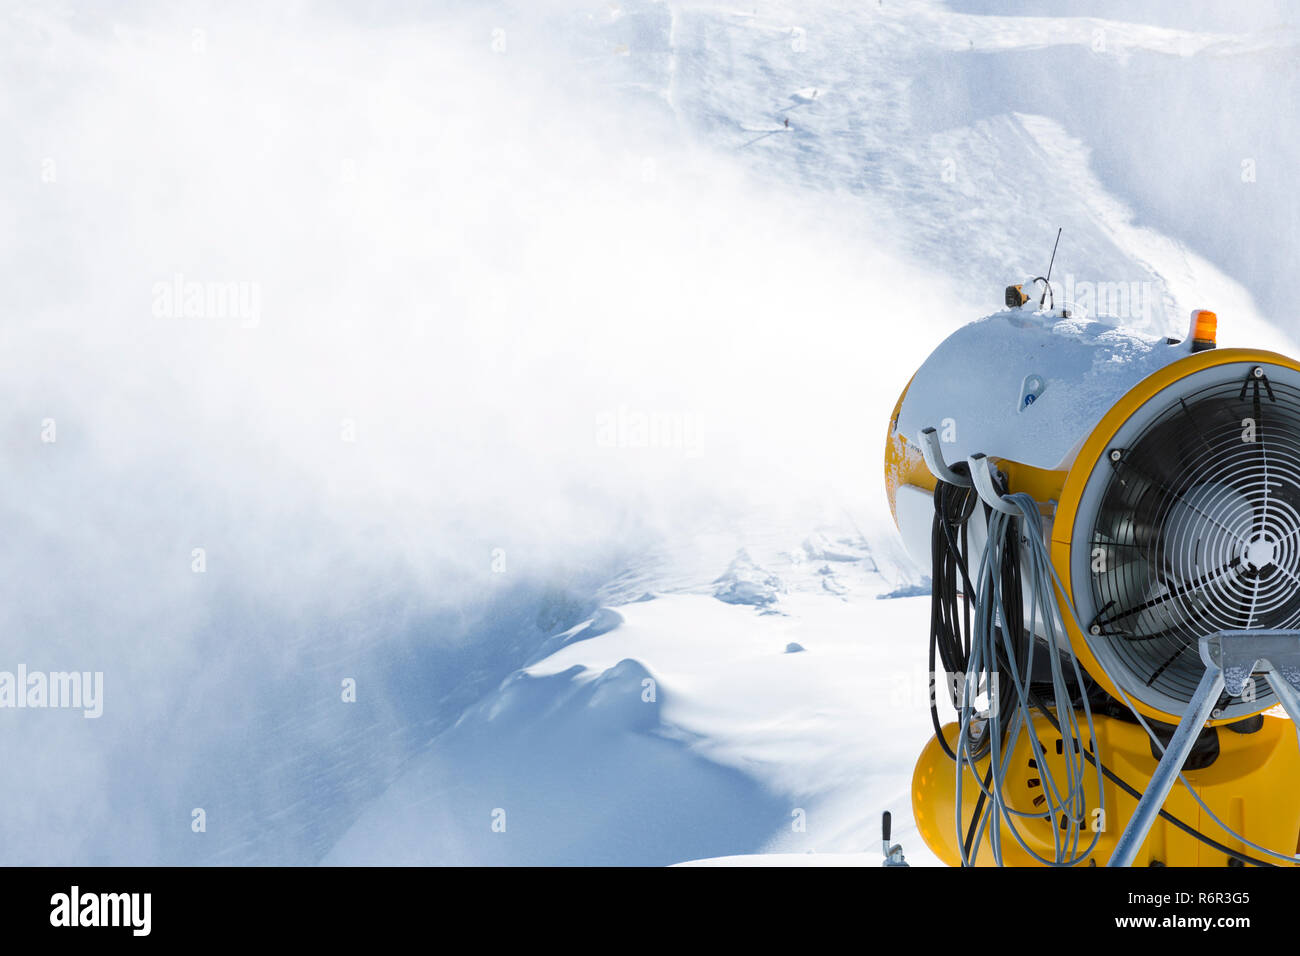 Schneemaschine, Schneekanone in Aktion bei Ski Resort Stockfotografie -  Alamy